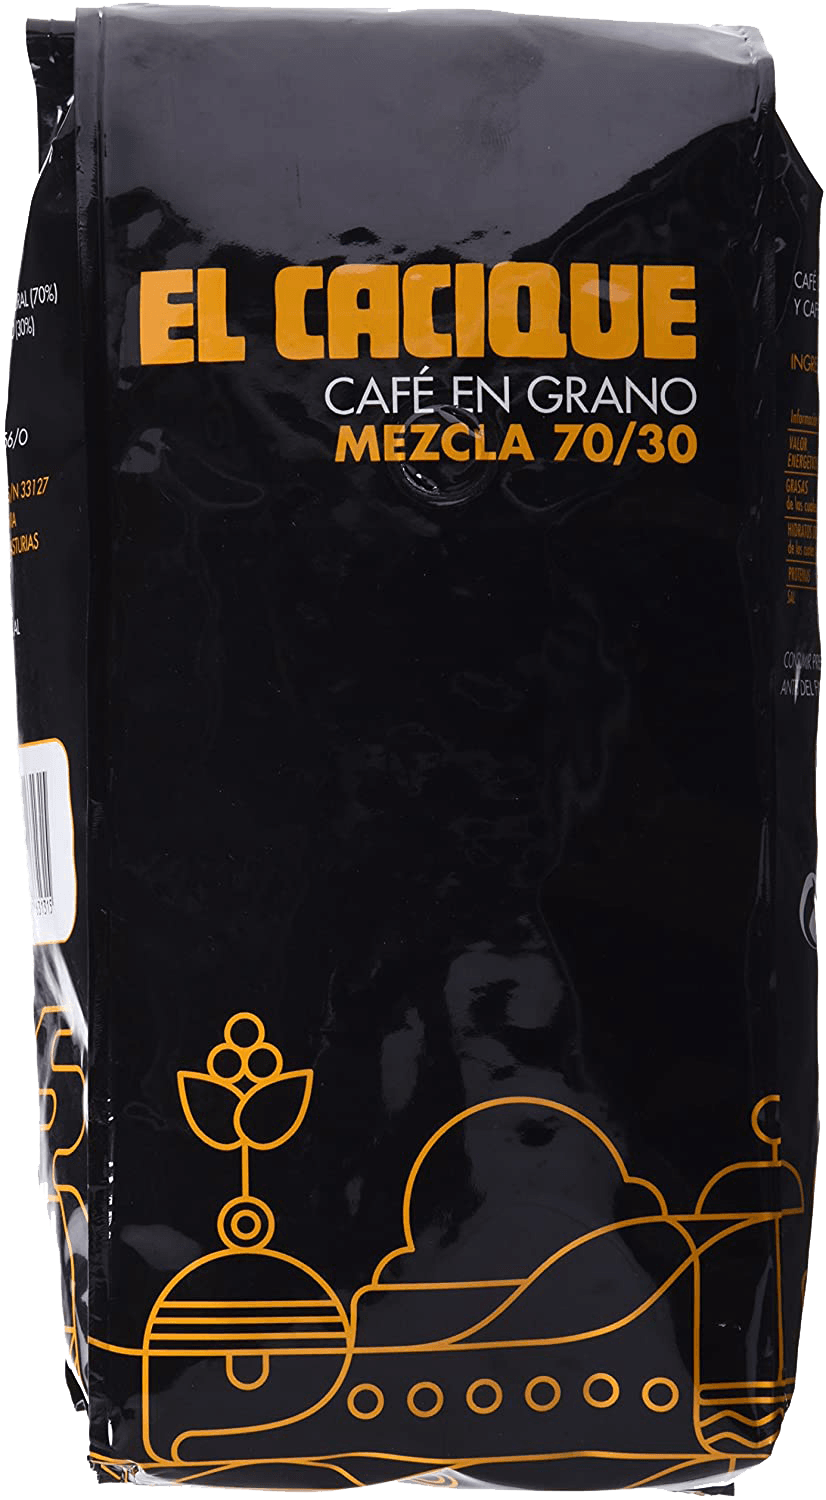 Cafe en grano el Cacique Mezcla 70/30 bolsa de 1 kg Precio sin IVA 7,95 €